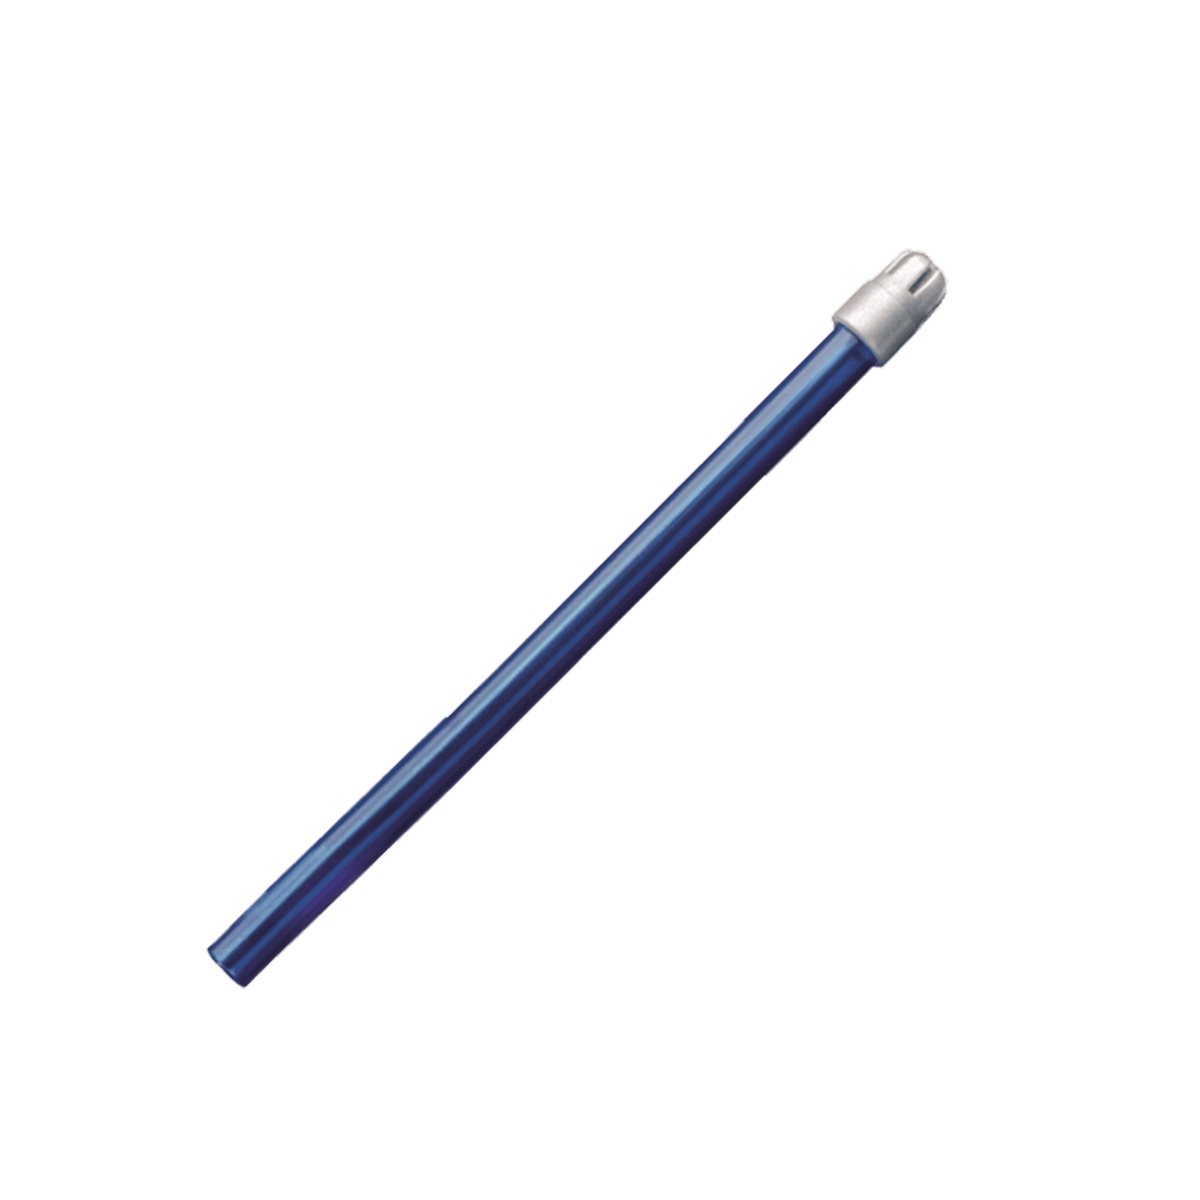 Monoart Speichelsauger 12,5 cm - Farbe: blau